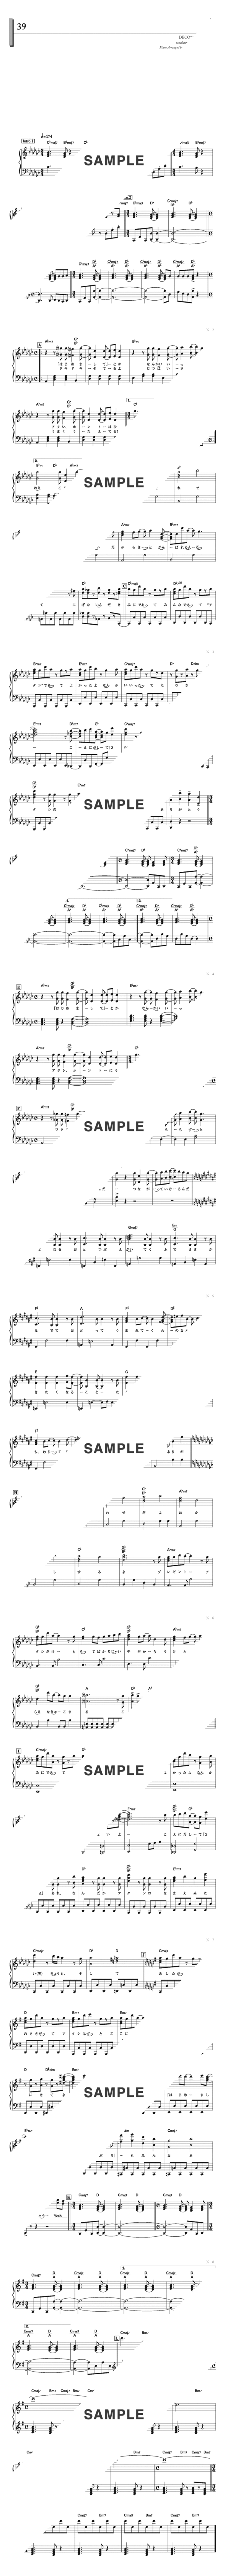 楽譜 39 Sasakure Uk Deco 27 ピアノ ソロ譜 初中級 提供 デプロmp 楽譜 Elise